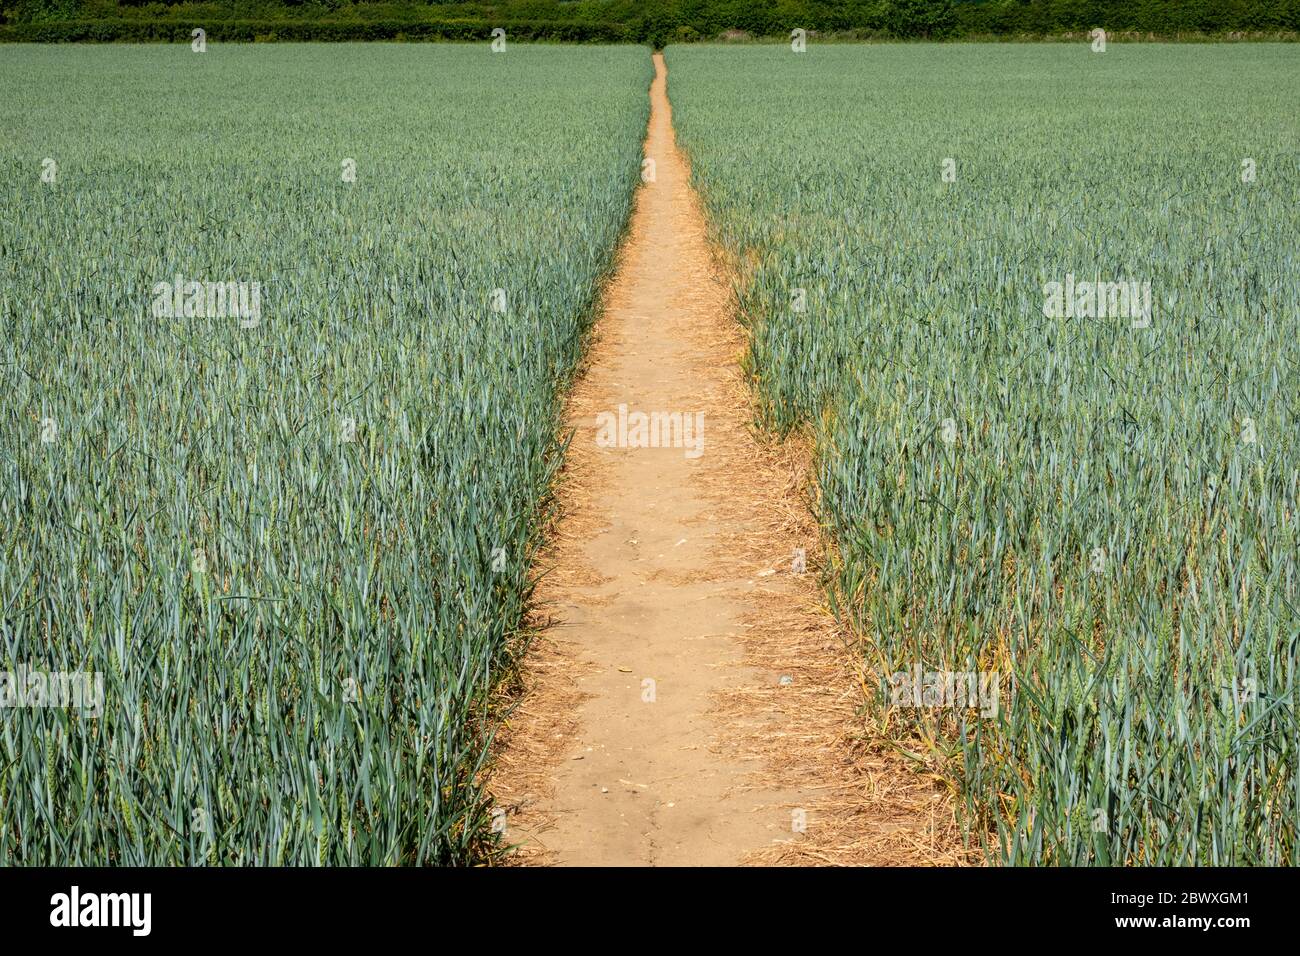 Une voie de coupe claire à travers un champ de blé immature divisant le limé en deux moitiés et formant un point de fuite sur l'horizon bordé d'arbres Banque D'Images